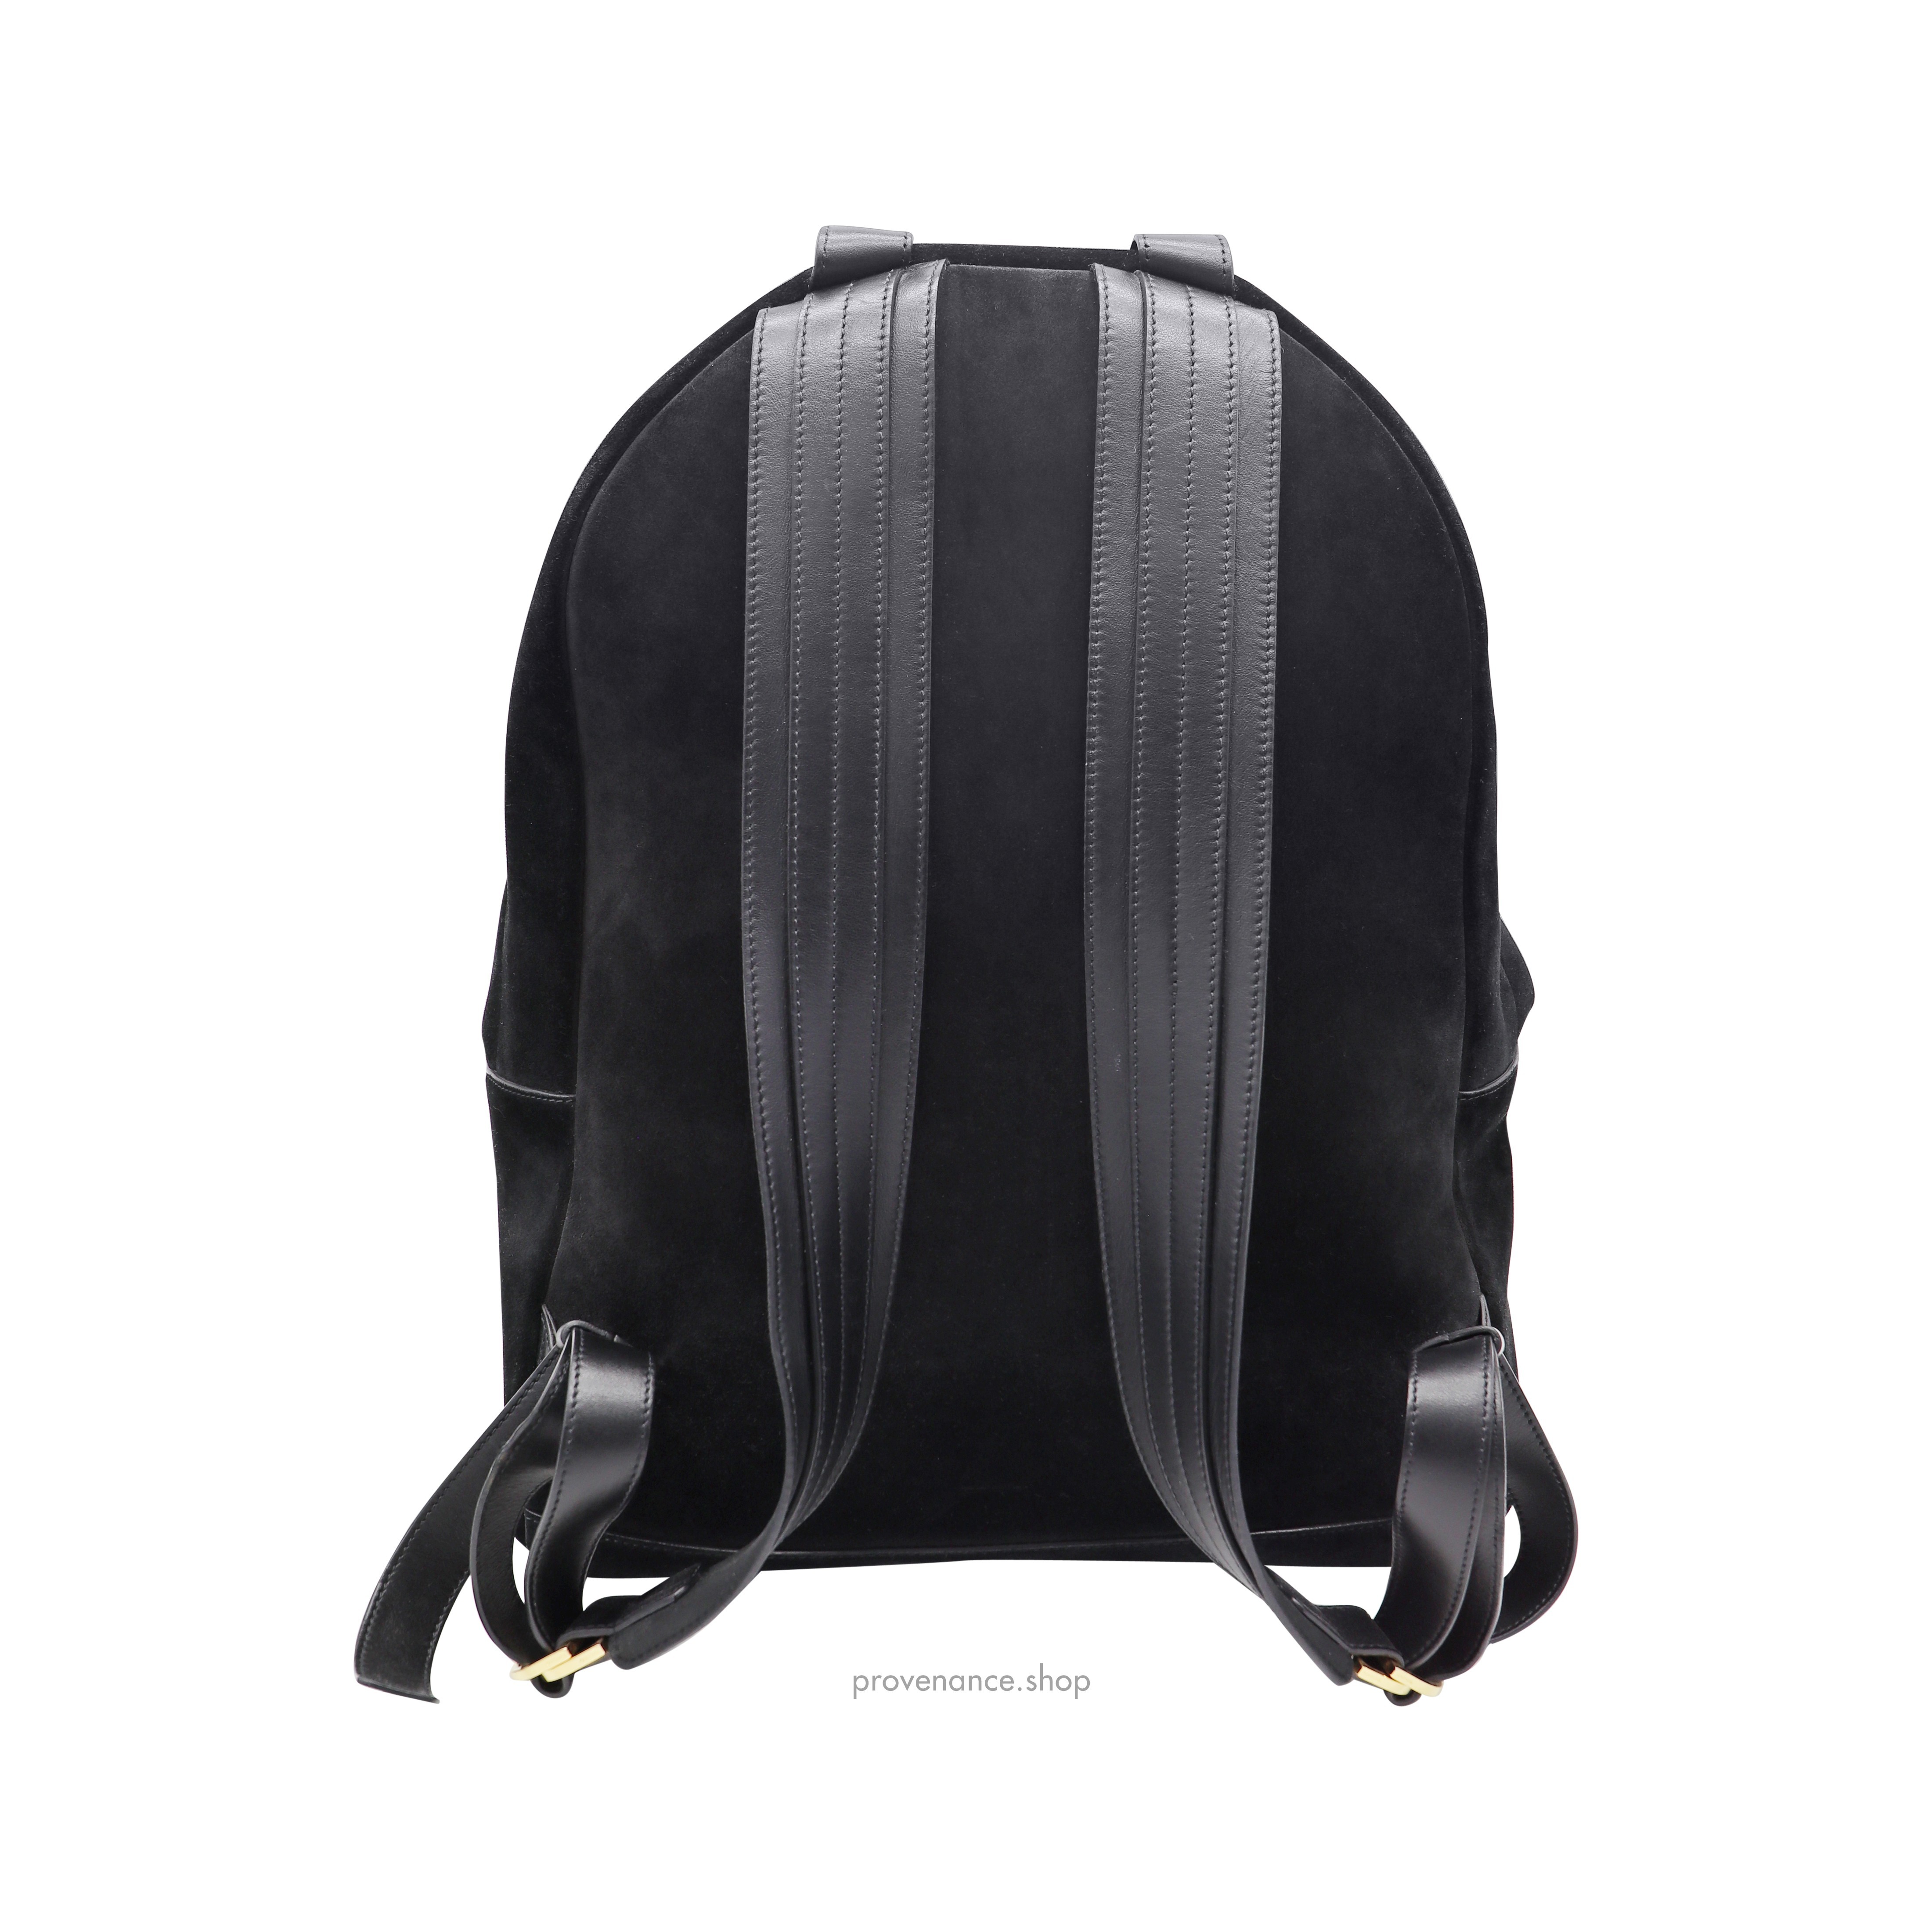 Buckley Backpack Bag - Black Suede - 6